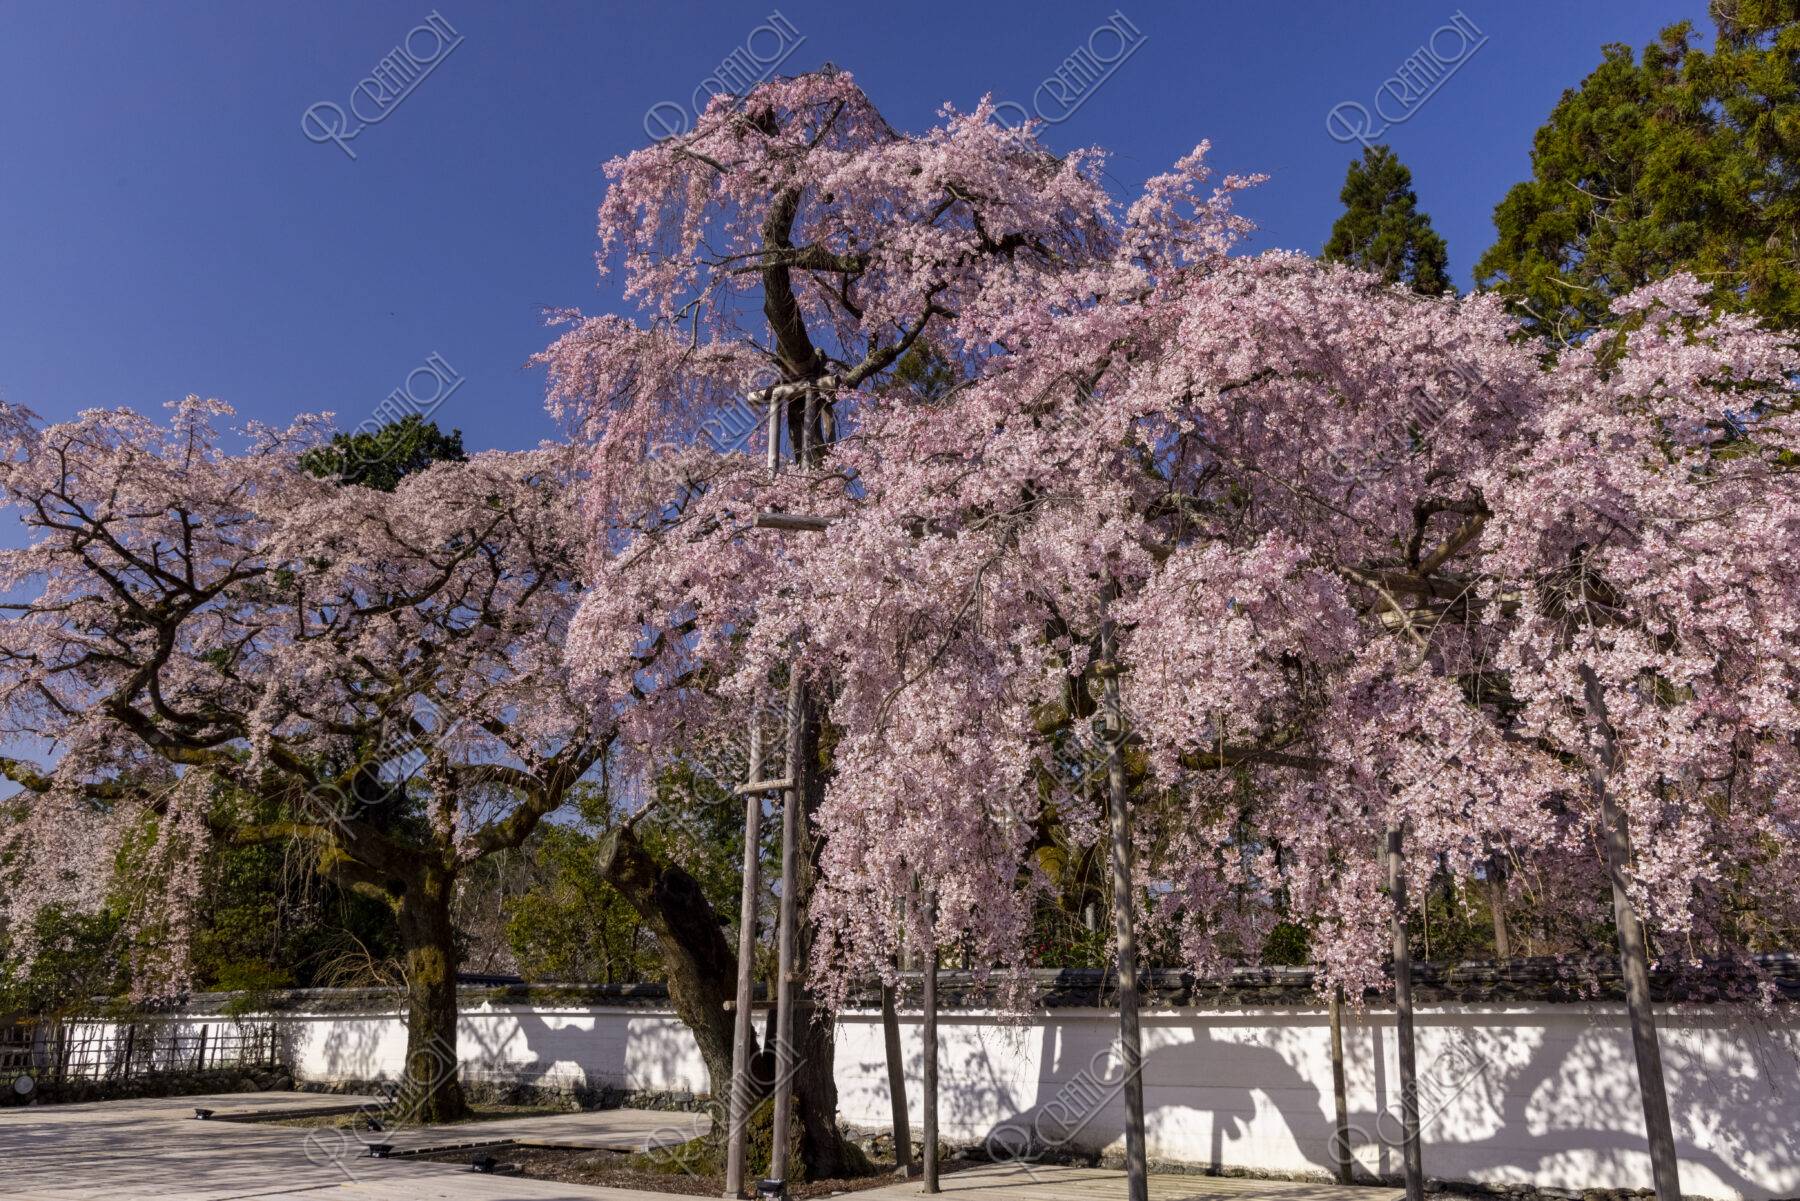 醍醐寺三宝院 桜